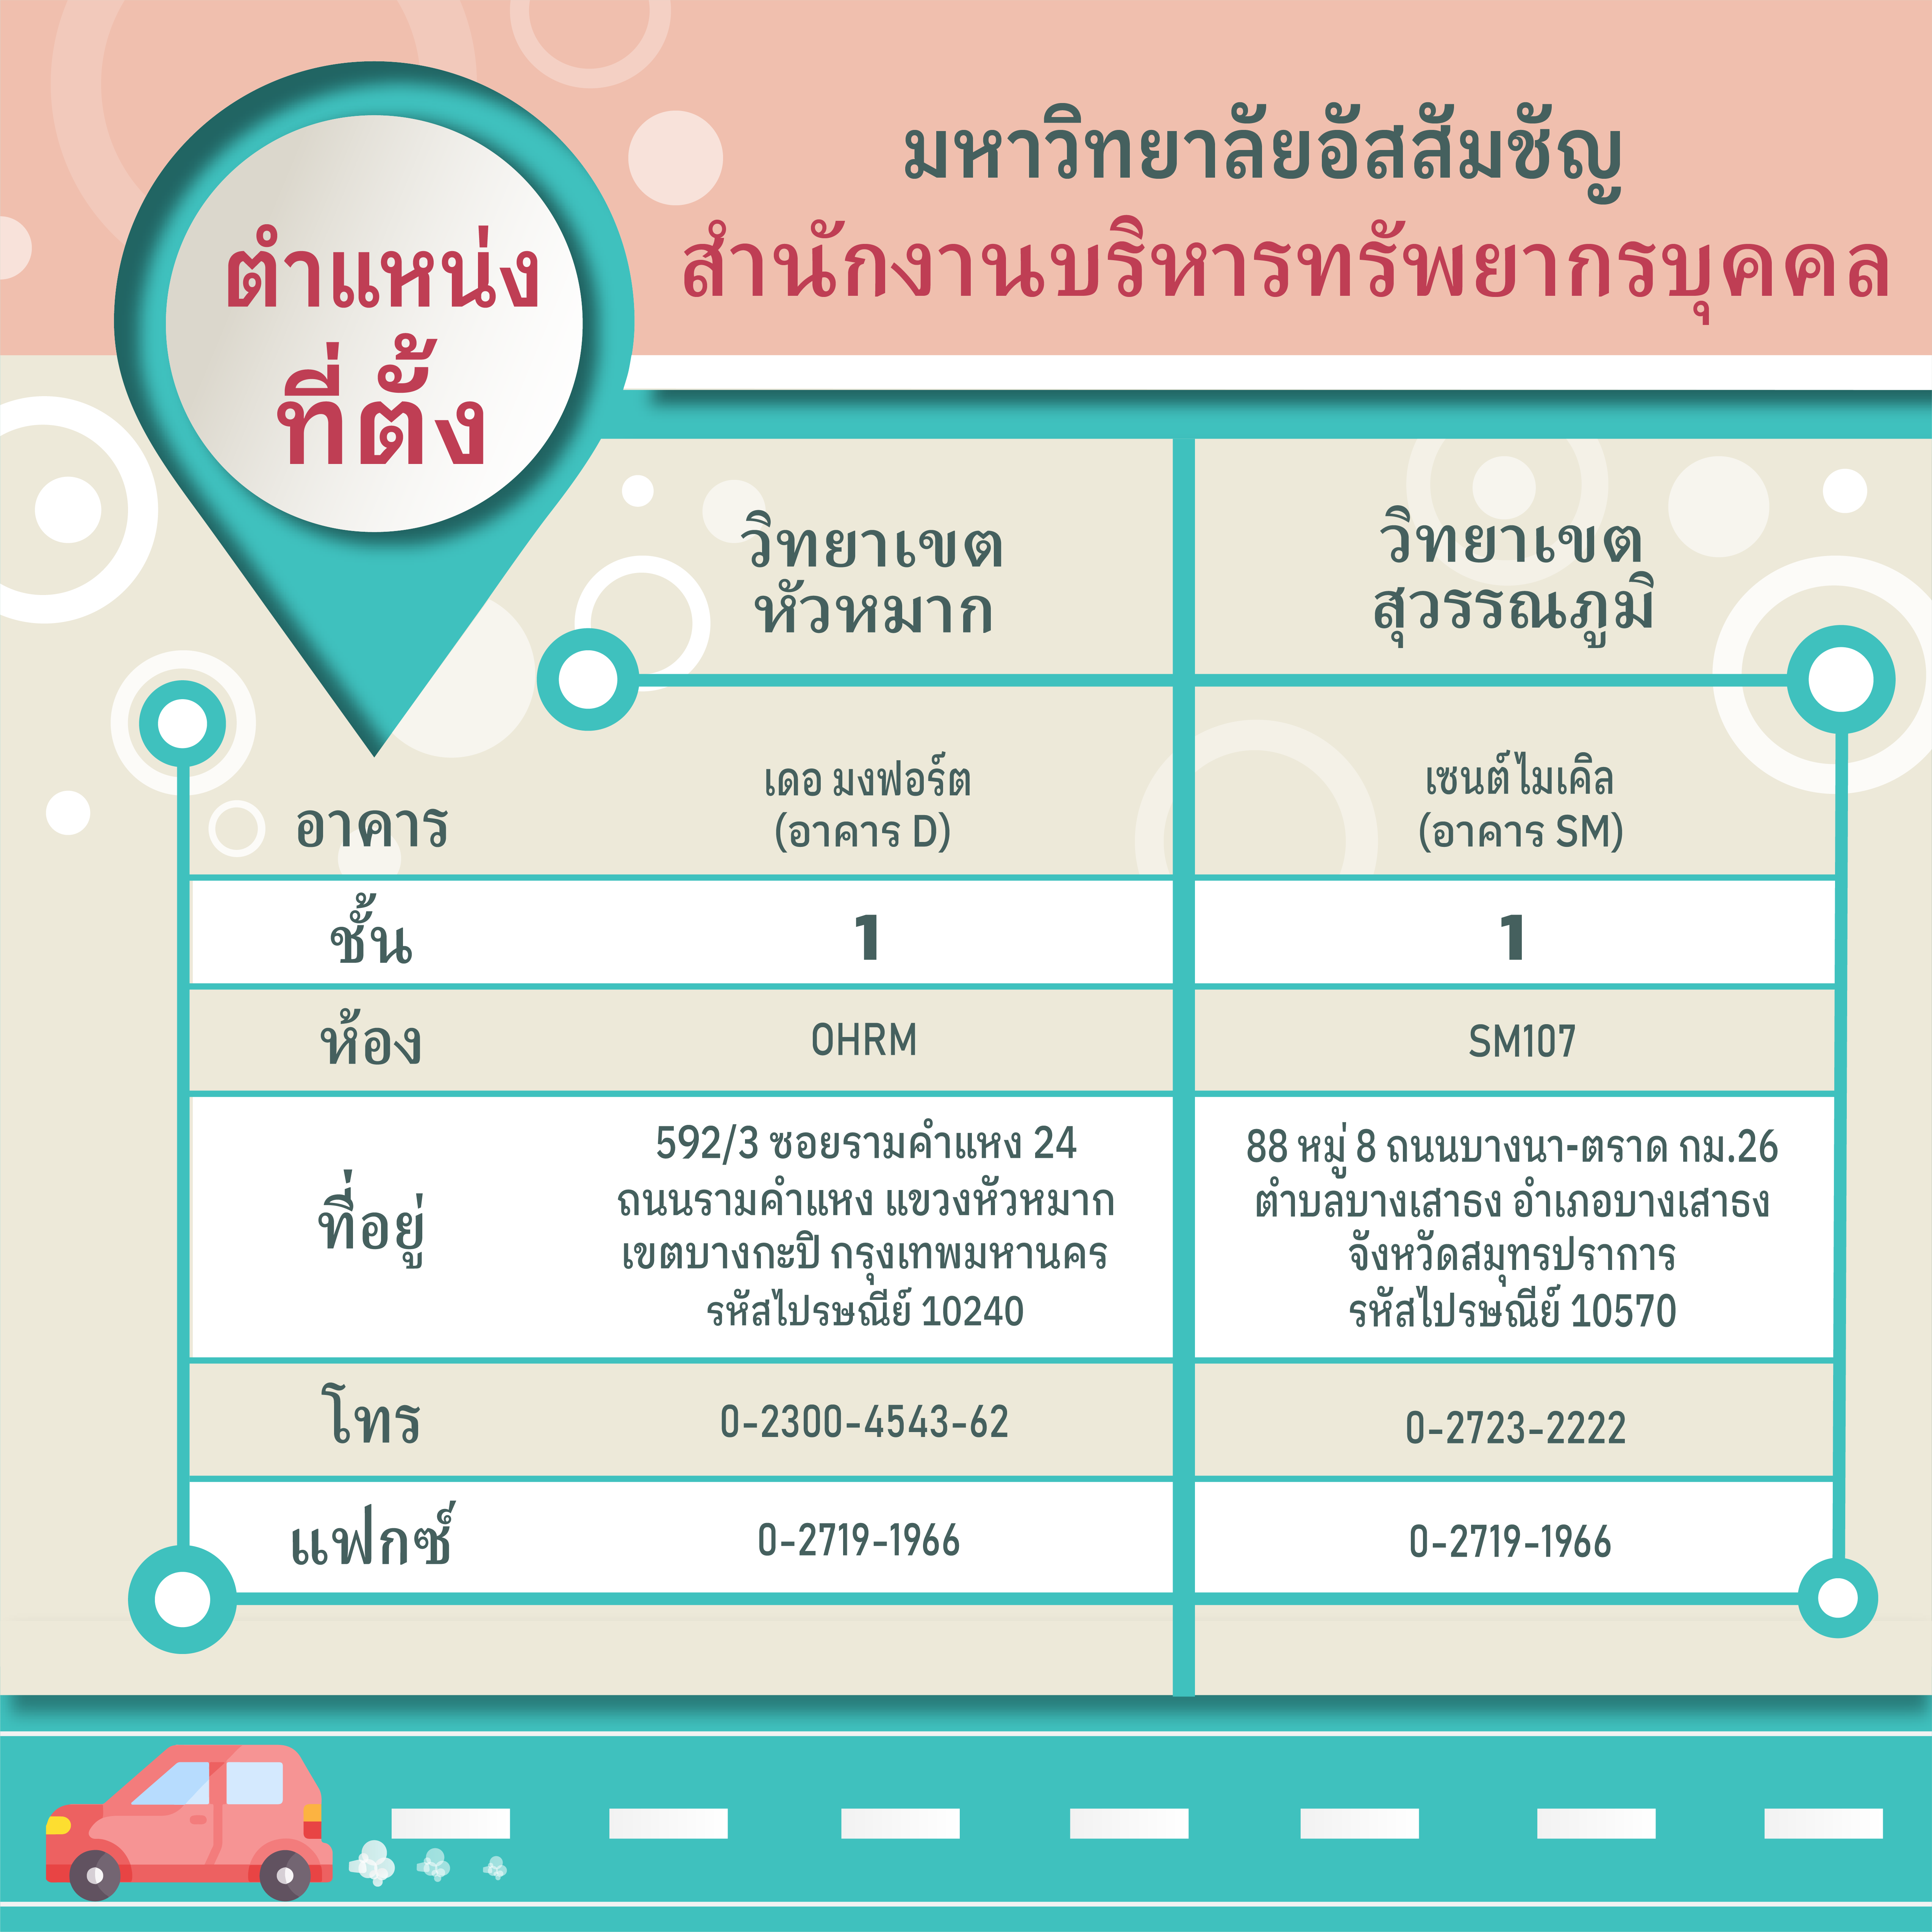 HR Location (Thai Version)